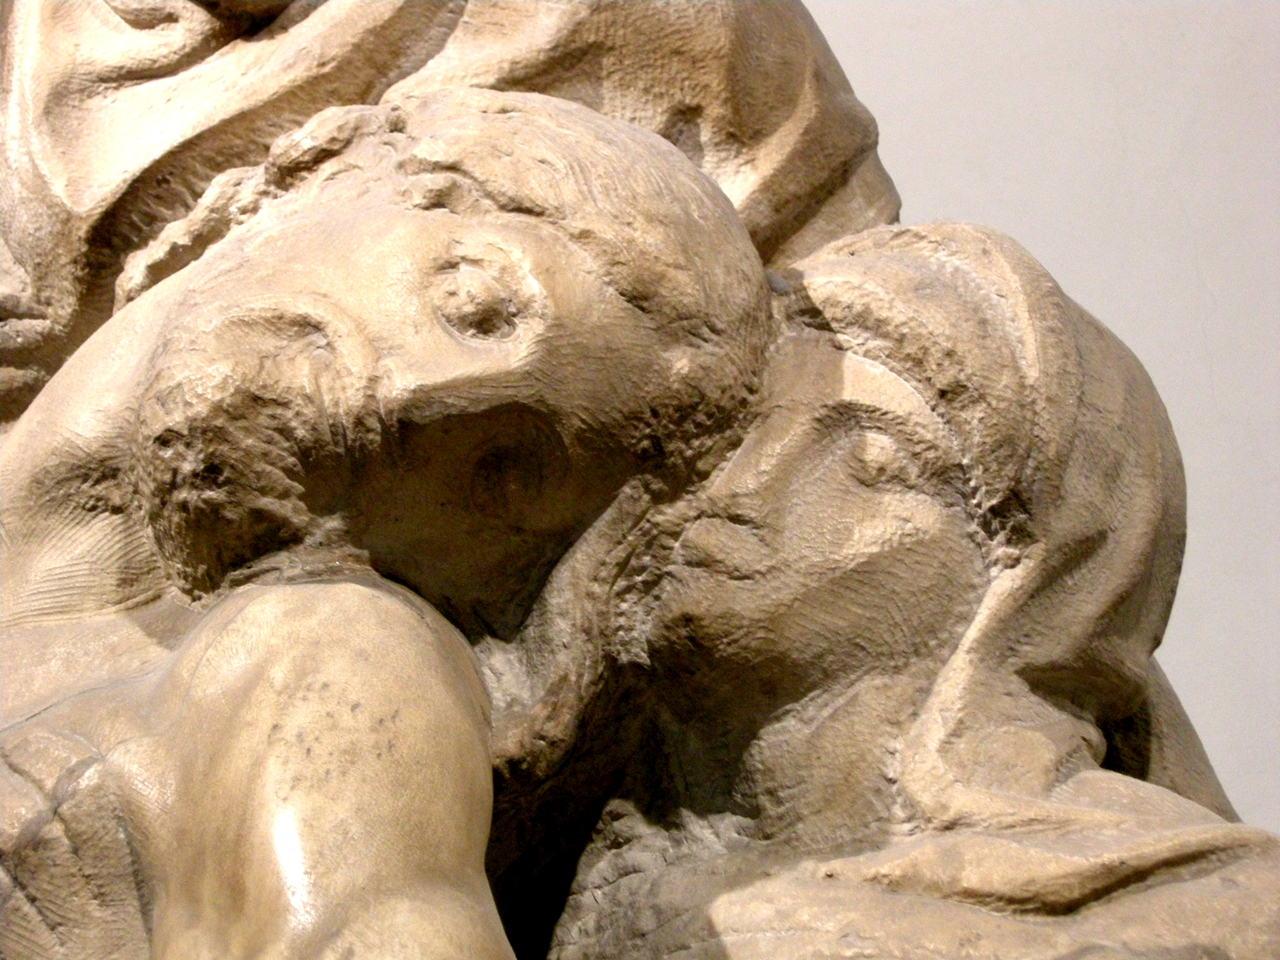 赋予石头生命的神级雕塑大师——米开朗基罗！